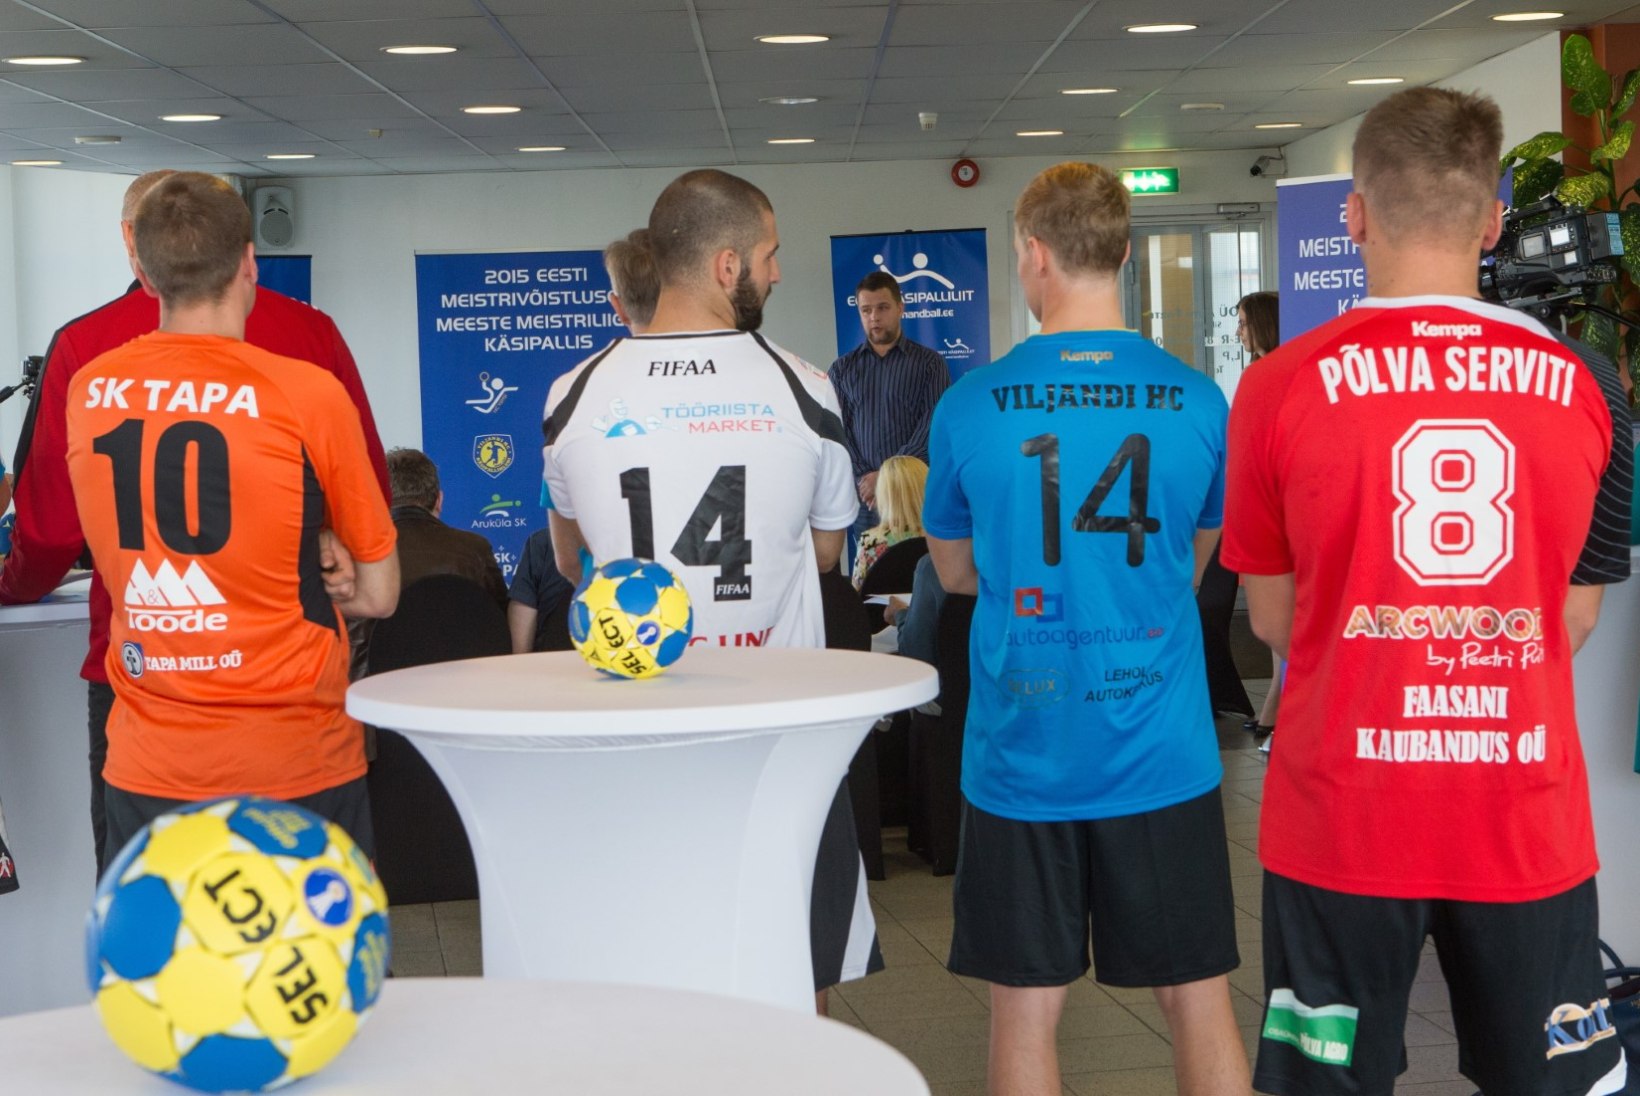 ÕHTULEHE VIDEO | Käsipalli Balti liigas toimuvad olulised muudatused